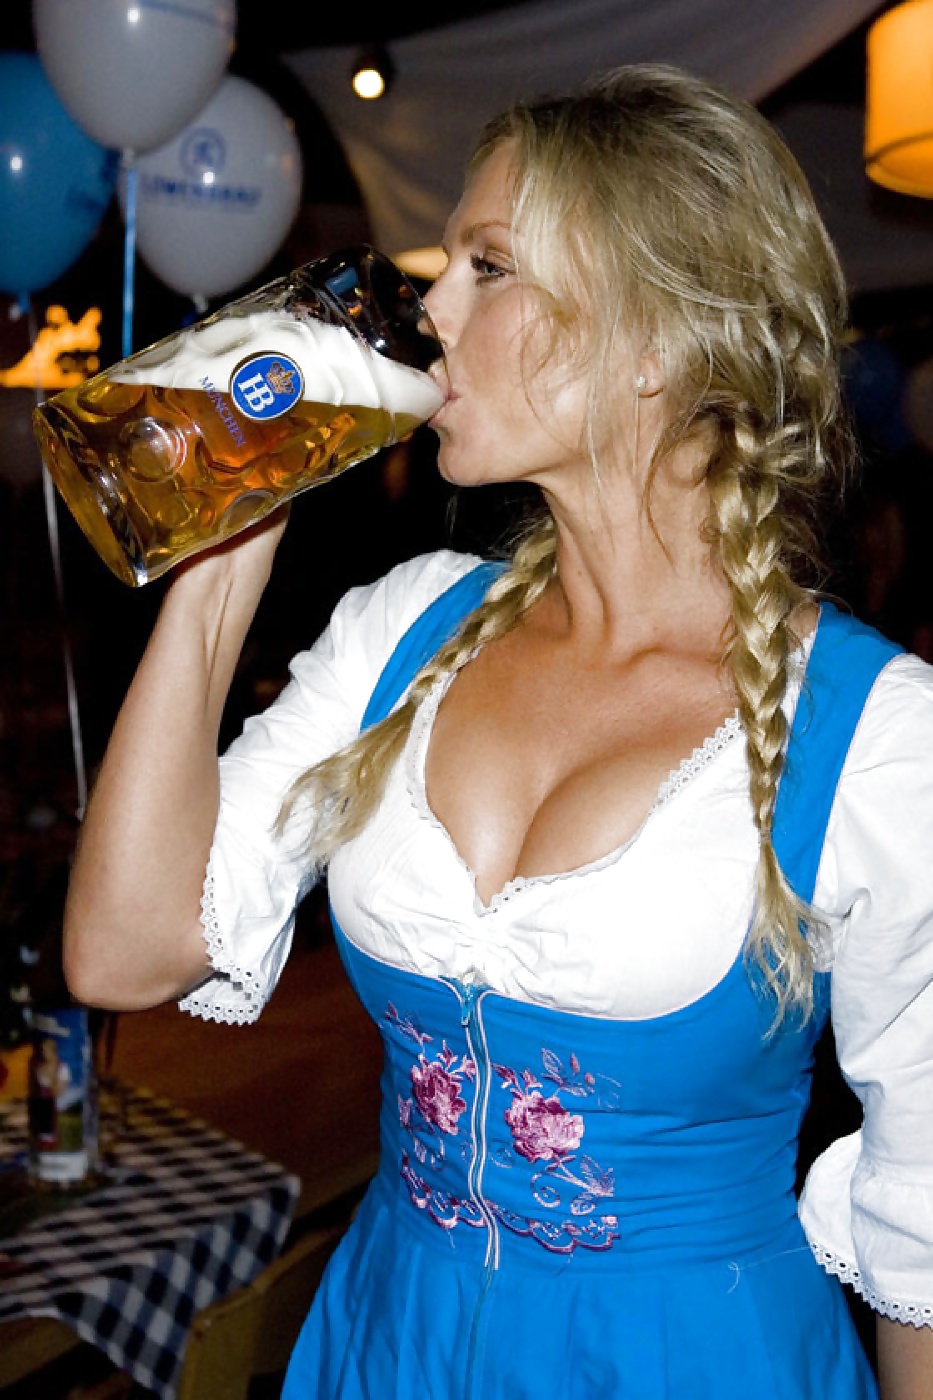 Frauen und Bier, Frauen im Dirndl - Lebe das Oktoberfest! pict gal